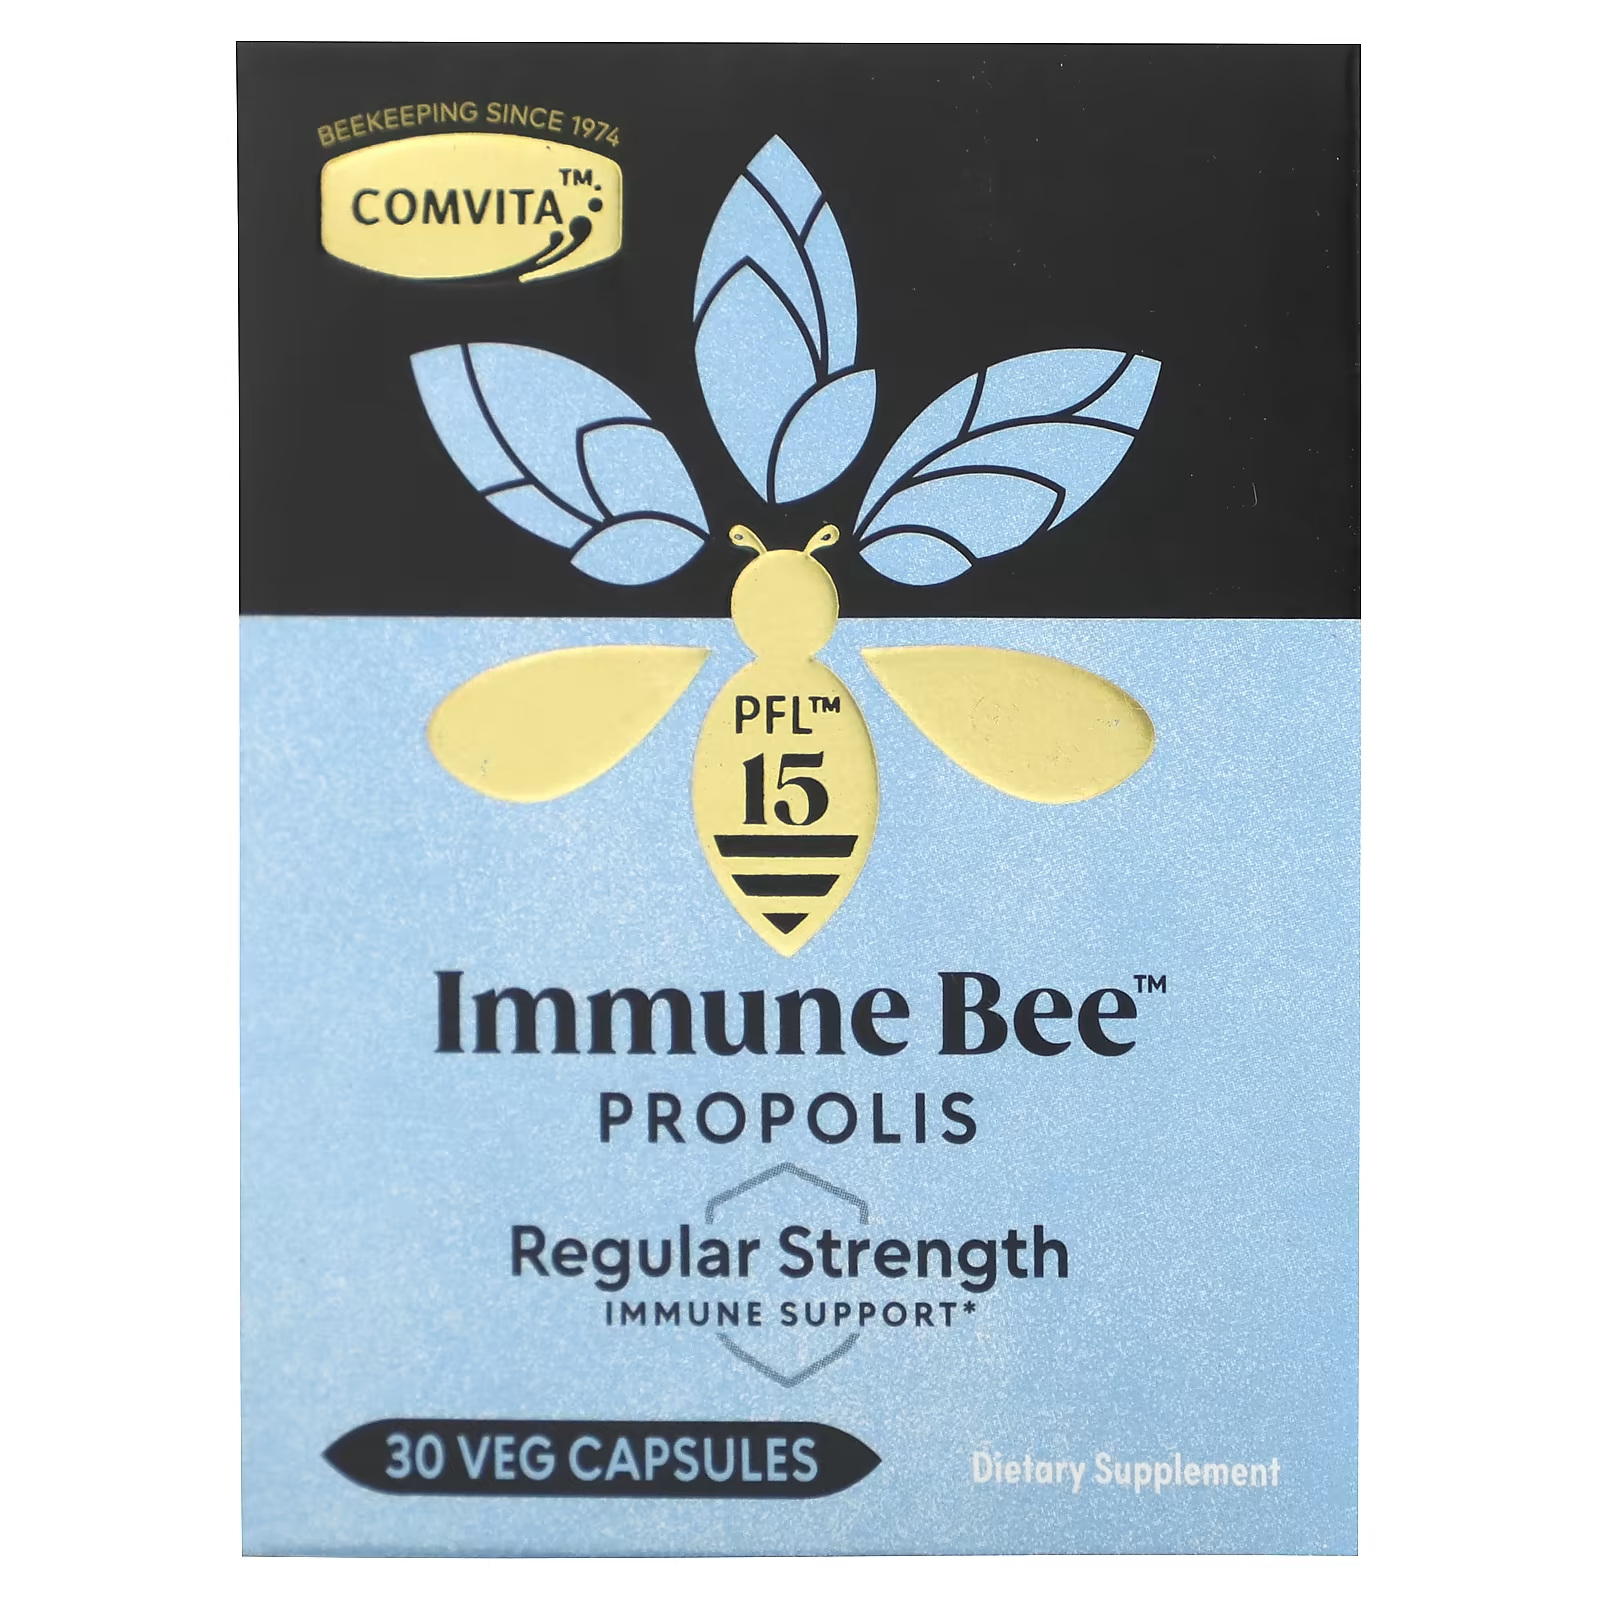 Пищевая добавка Comvita Immune Bee Propolis обычная поддержка иммунитета, 30 растительных капсул comvita immune bee propolis regular strength immune support pfl15 30 veg capsules